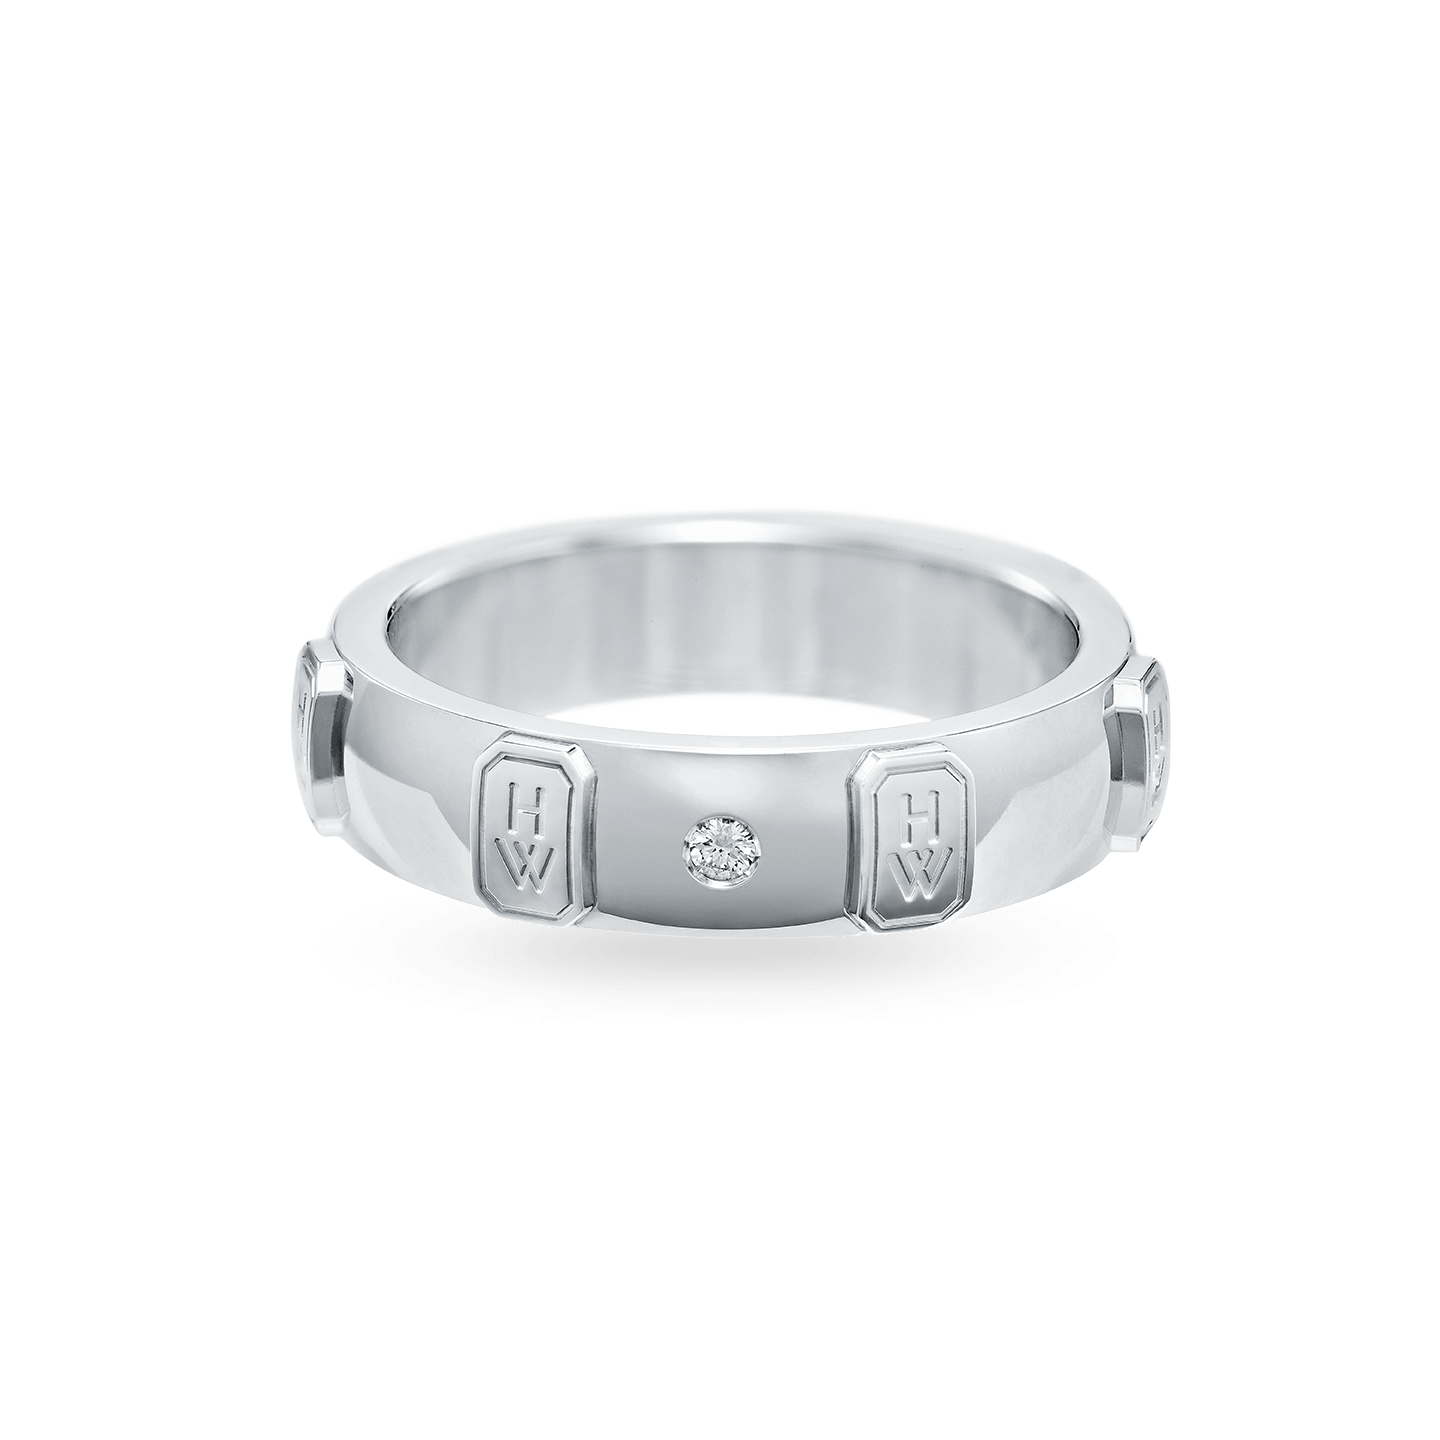 HW Logo White Gold Single Diamond Ring, Product Image 2